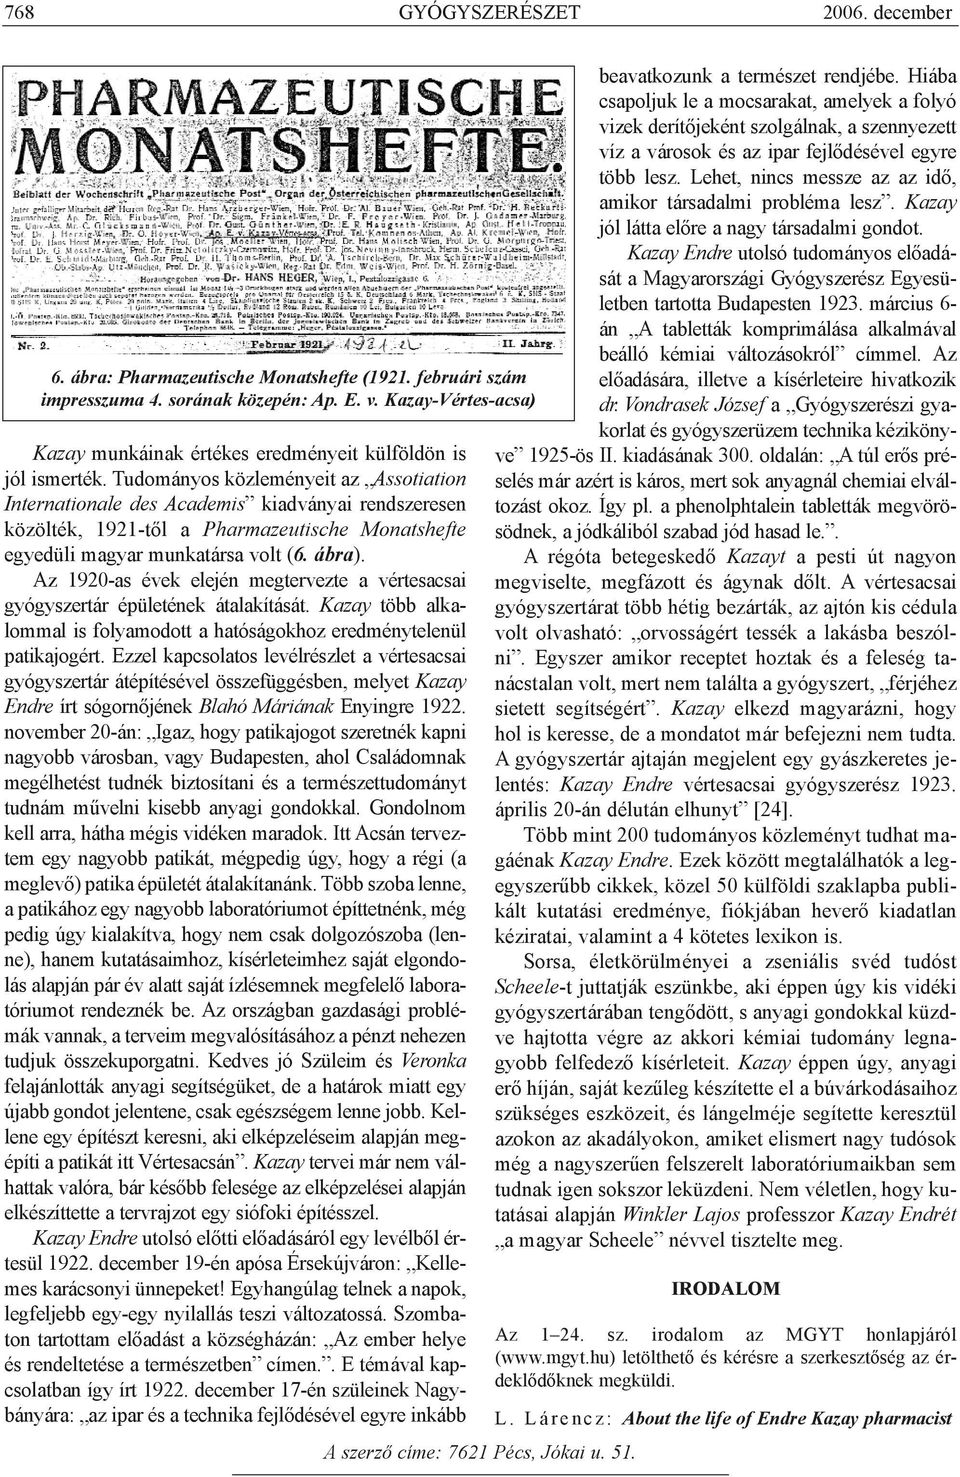 Tudományos közleményeit az Assotiation Internationale des Academis kiadványai rendszeresen közölték, 1921-tõl a Pharmazeutische Monatshefte egyedüli magyar munkatársa volt (6. ábra).